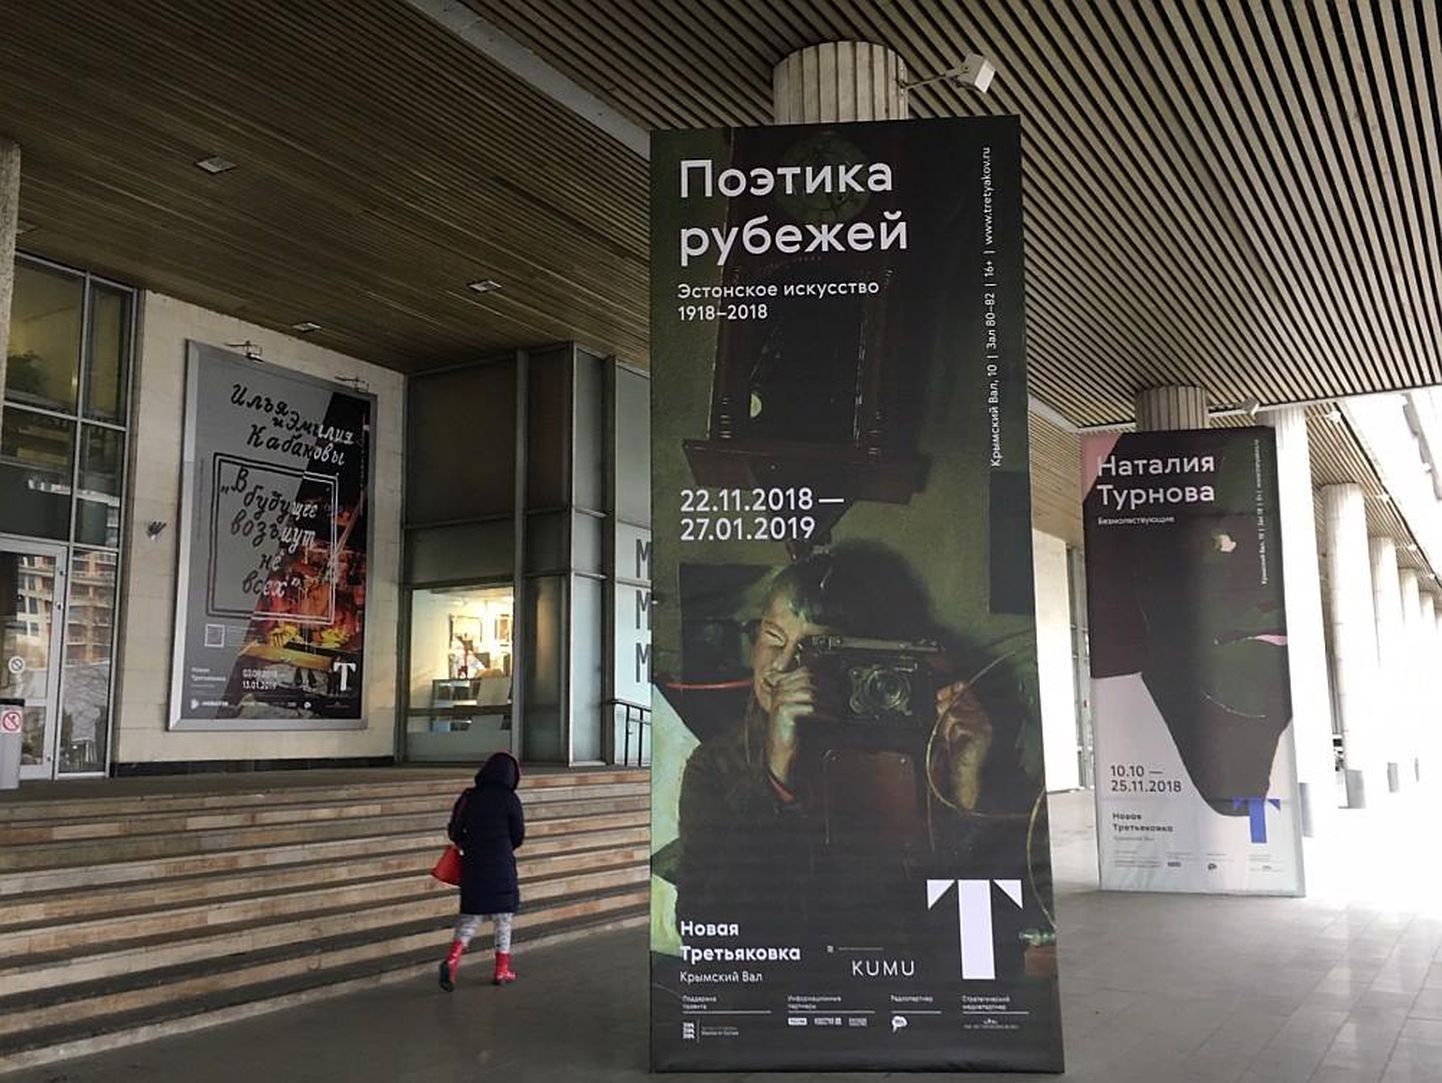 Tretjakovi galeriis näeb Eesti kunsti